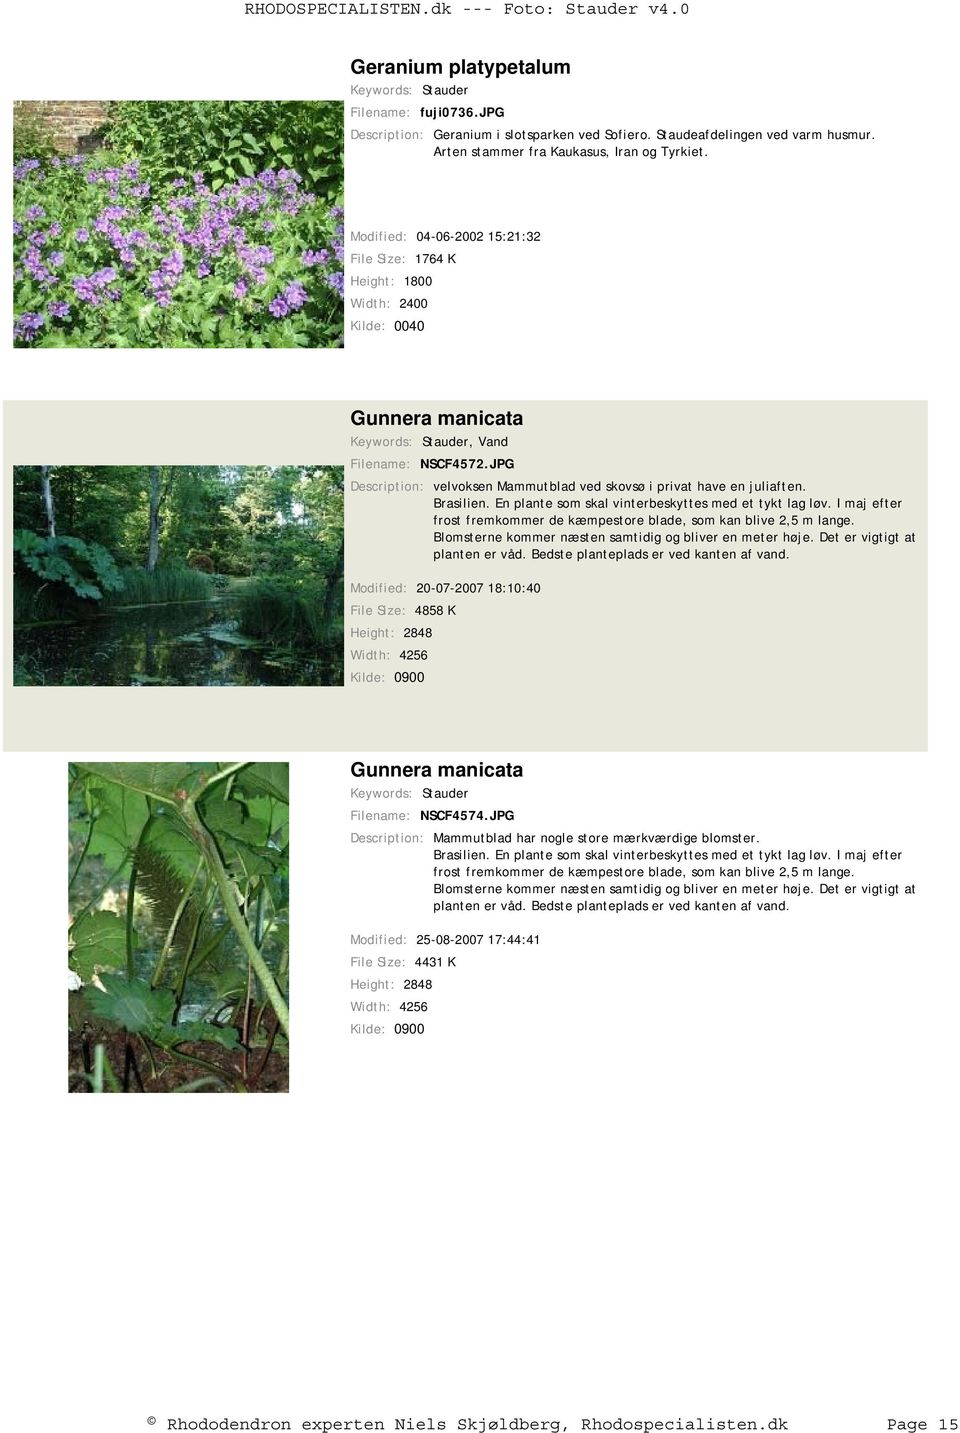 JPG Description: velvoksen Mammutblad ved skovsø i privat have en juliaften. Brasilien. En plante som skal vinterbeskyttes med et tykt lag løv.